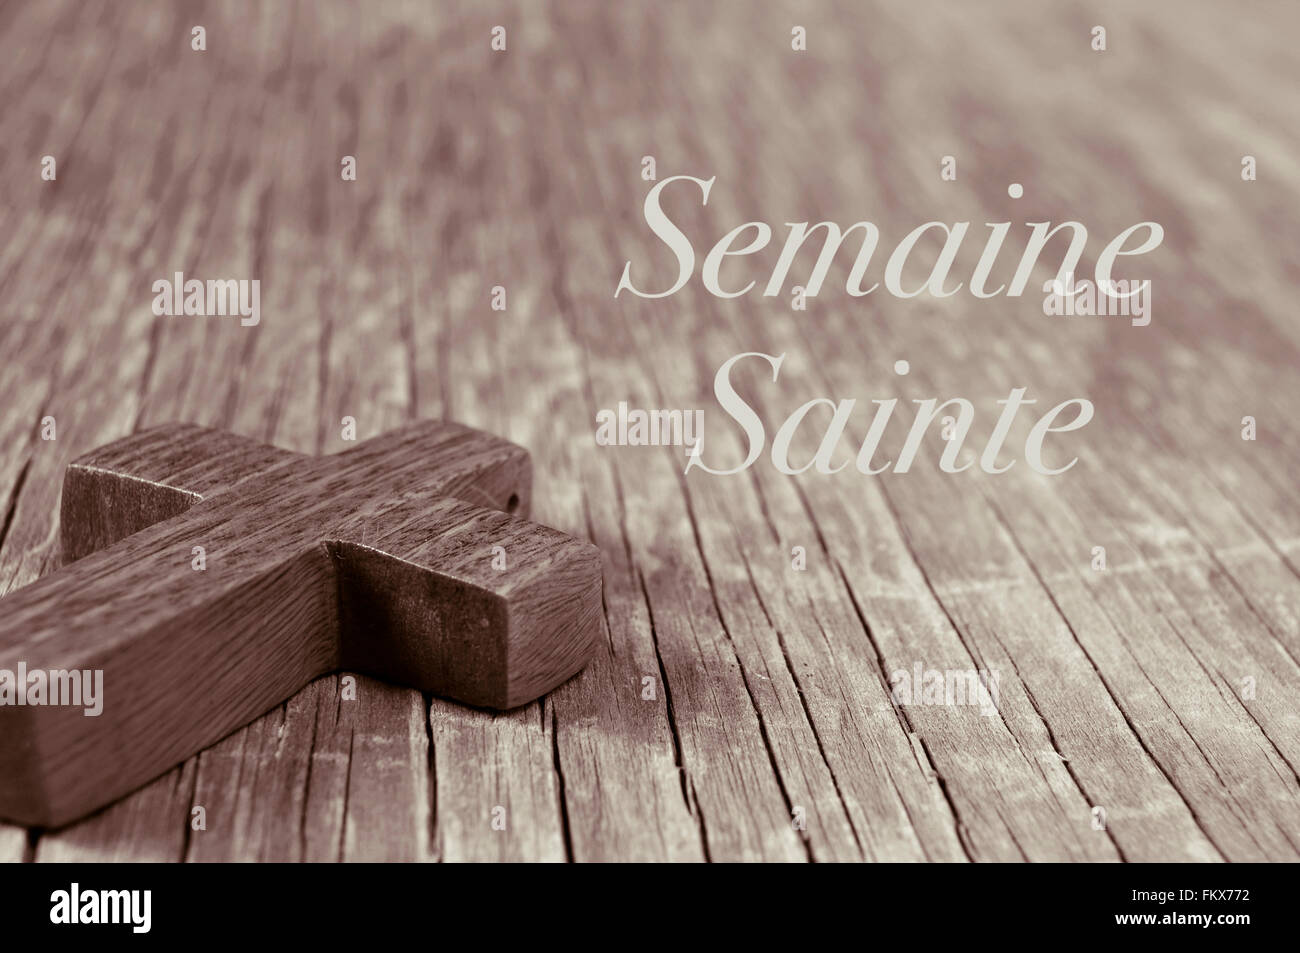 Nahaufnahme von einem kleinen Holzkreuz auf einer rustikalen Holzoberfläche und der Text Semaine Sainte, Karwoche in Französisch, in Sepia Tönung Stockfoto